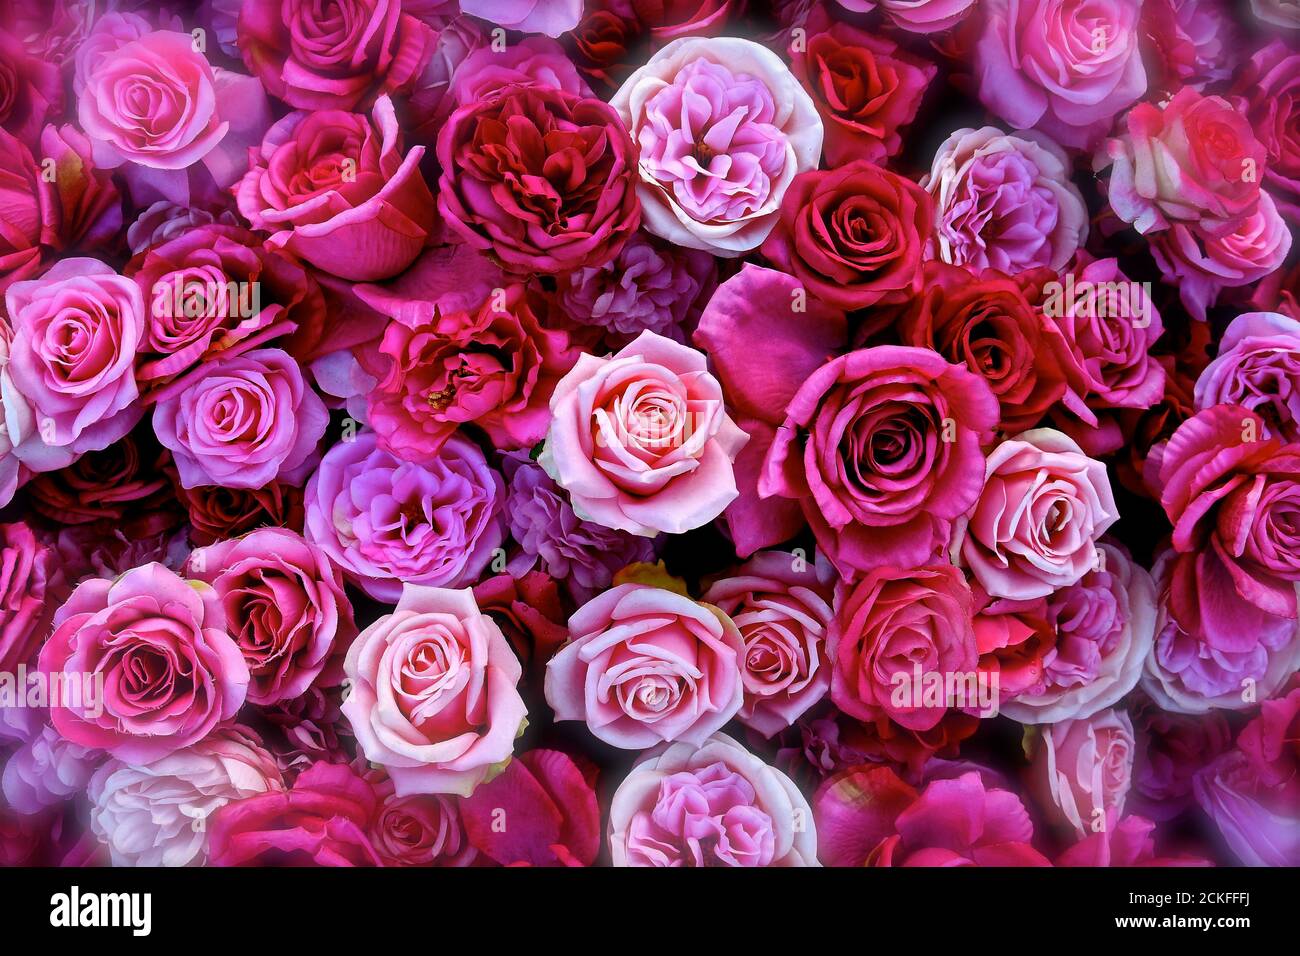 Une vue aérienne d'une flatte de roses assorties en pleine fleur dans une variété de nuances et de tons de rose, crème et pêche. Banque D'Images